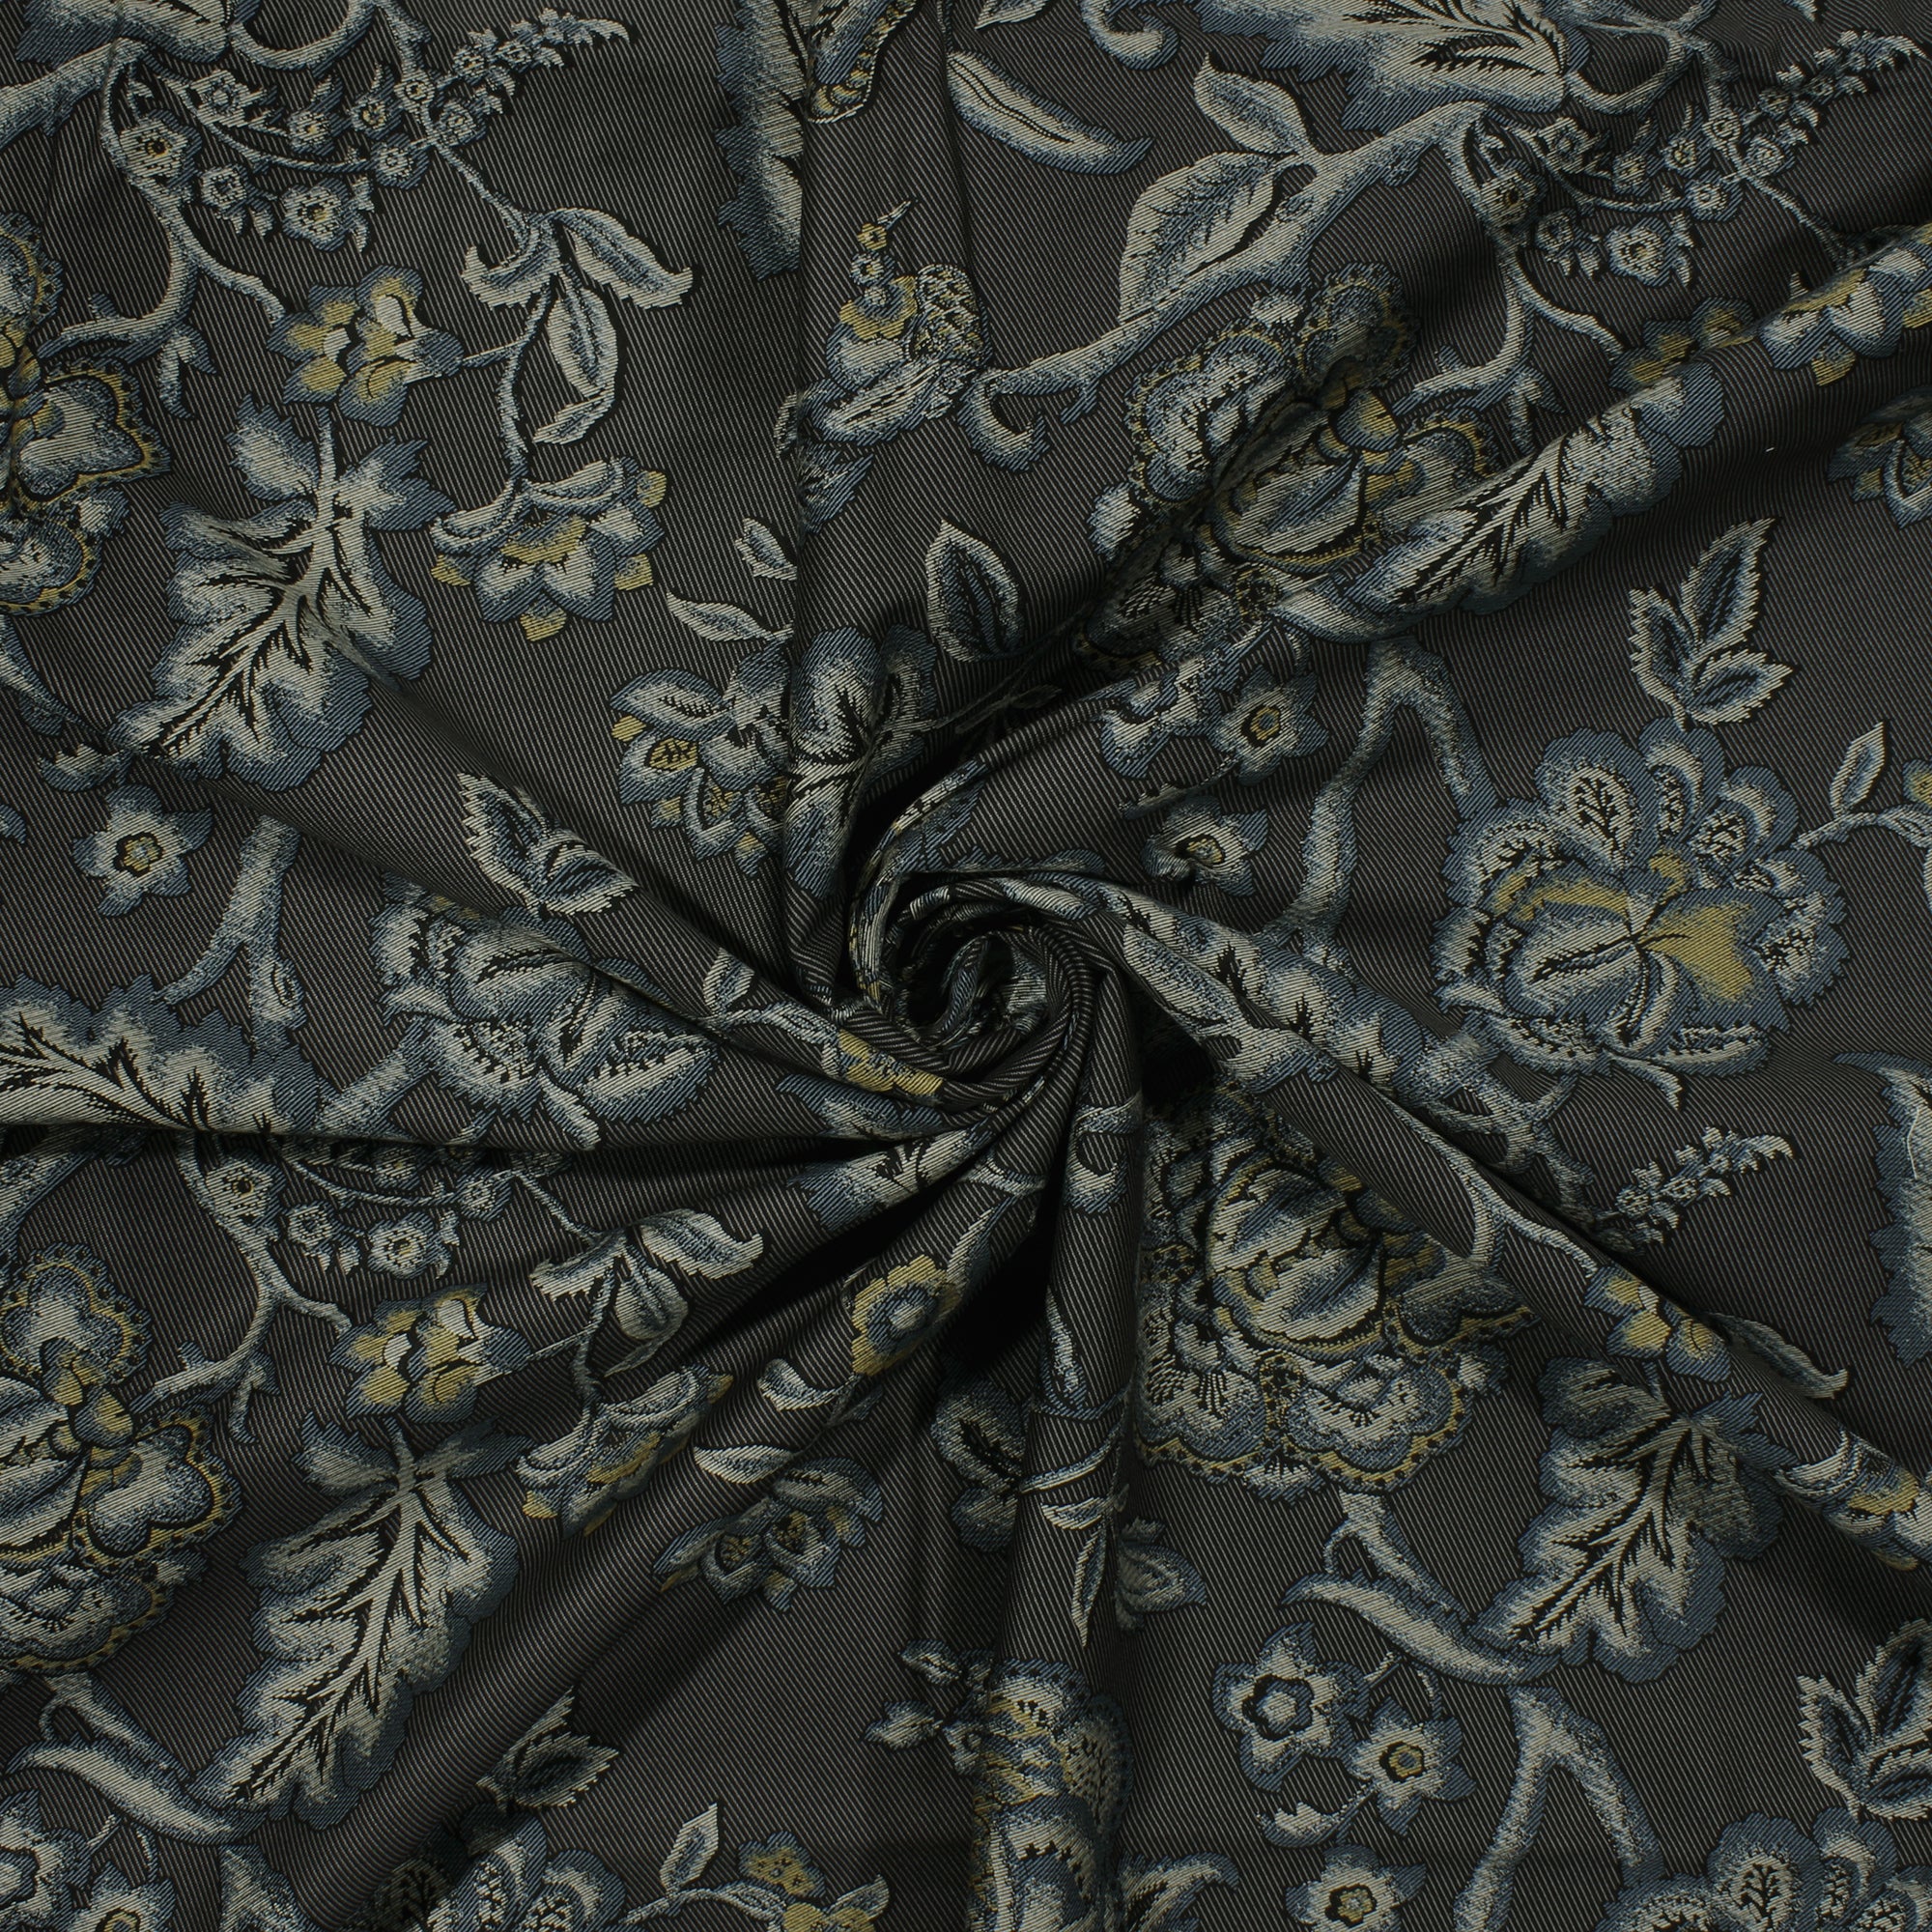 MOLLIS HOMES SUPER KING SIZE BEDSHEET - Ditsy Floral Pattern, Black